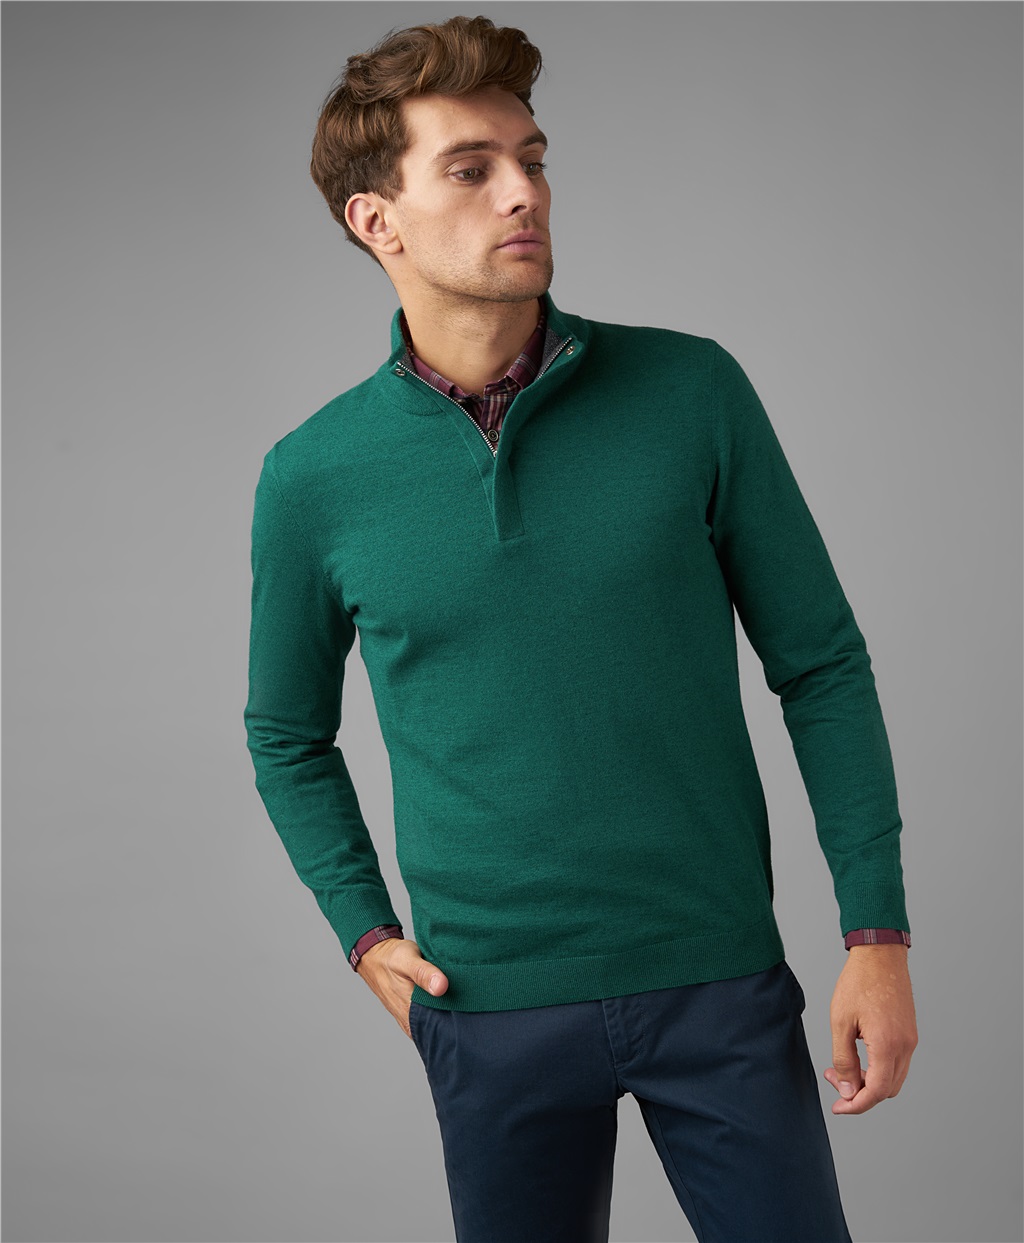 Зеленые свитеры мужские. Henderson джемпер мужской. Зеленая водолазка Хендерсон. Хендерсон зеленый пуловер. Зеленый джемпер мужской.